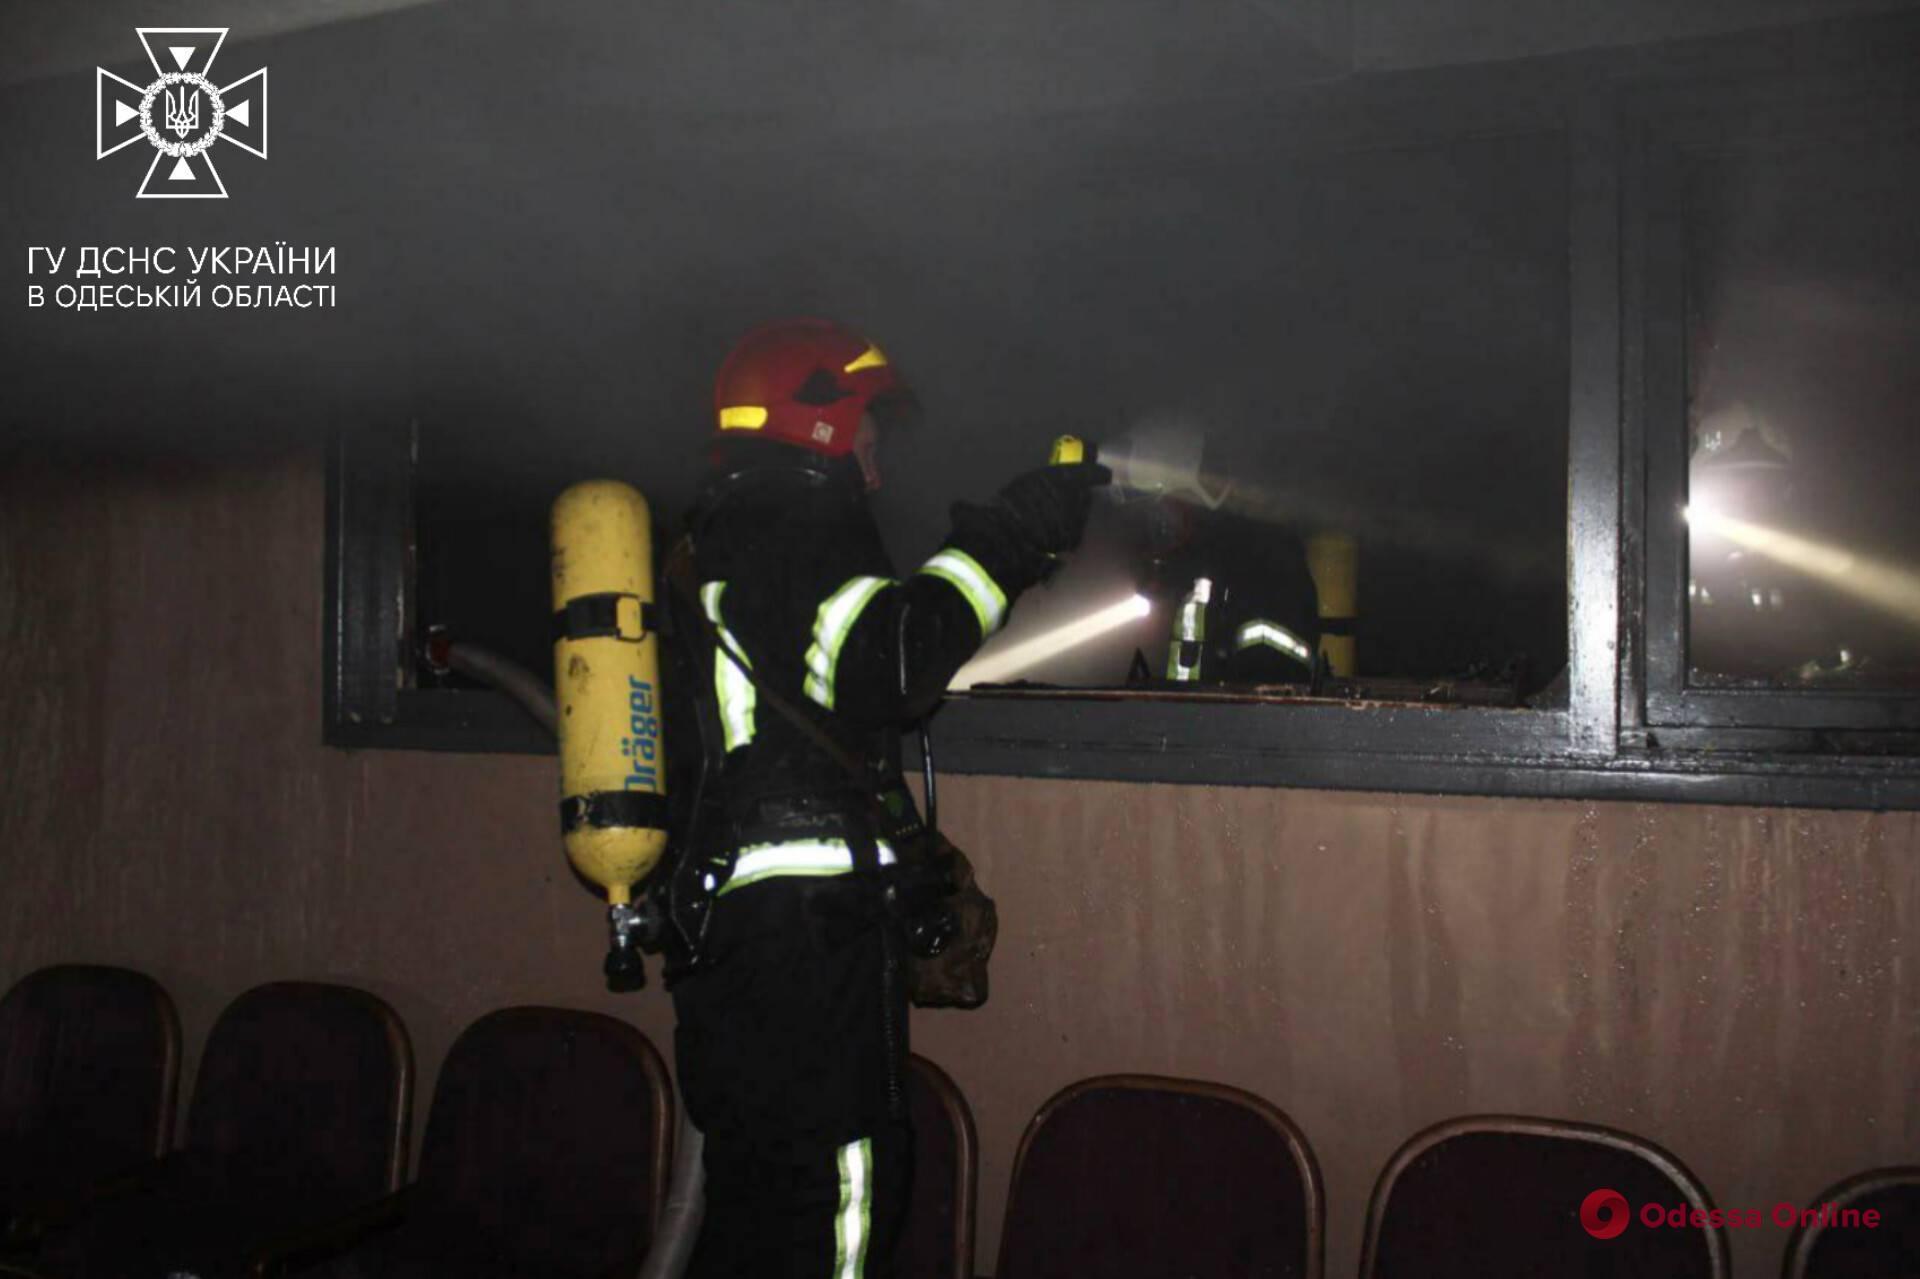 Пожар в Украинском театре: одесские спасатели рассказали подробности происшествия (фото, видео)